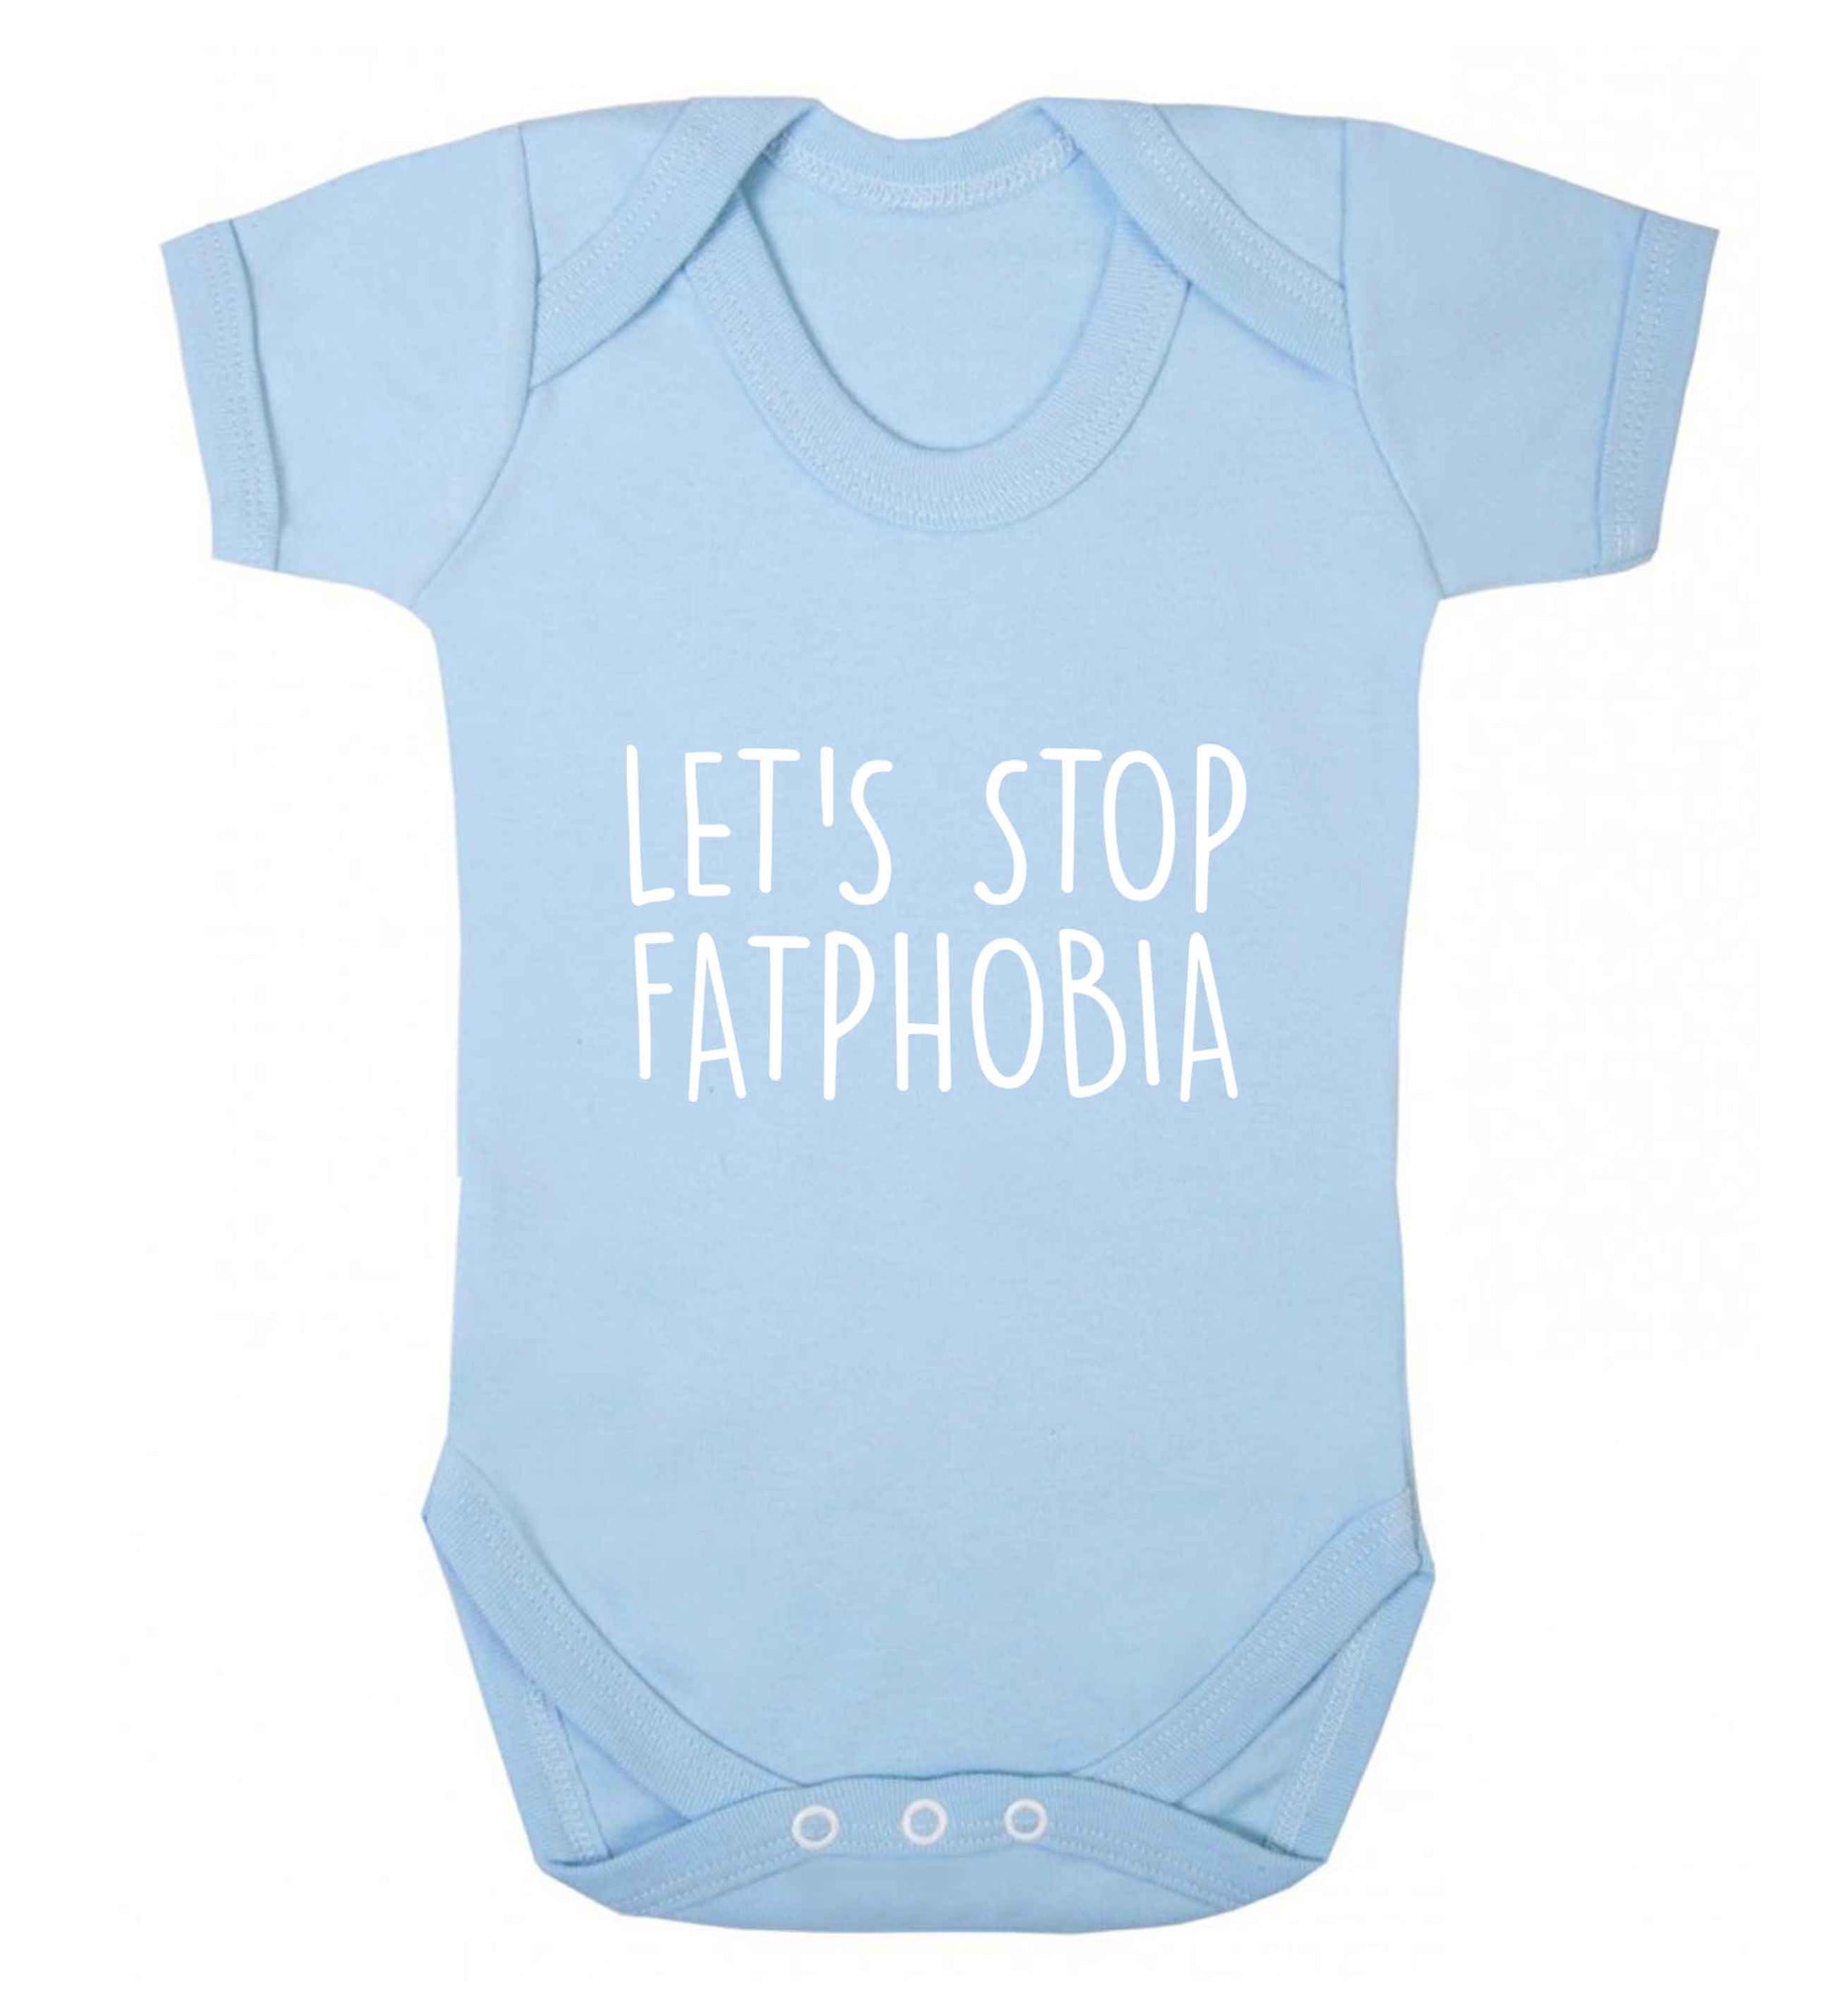 Let's stop fatphobia baby vest pale blue 18-24 months